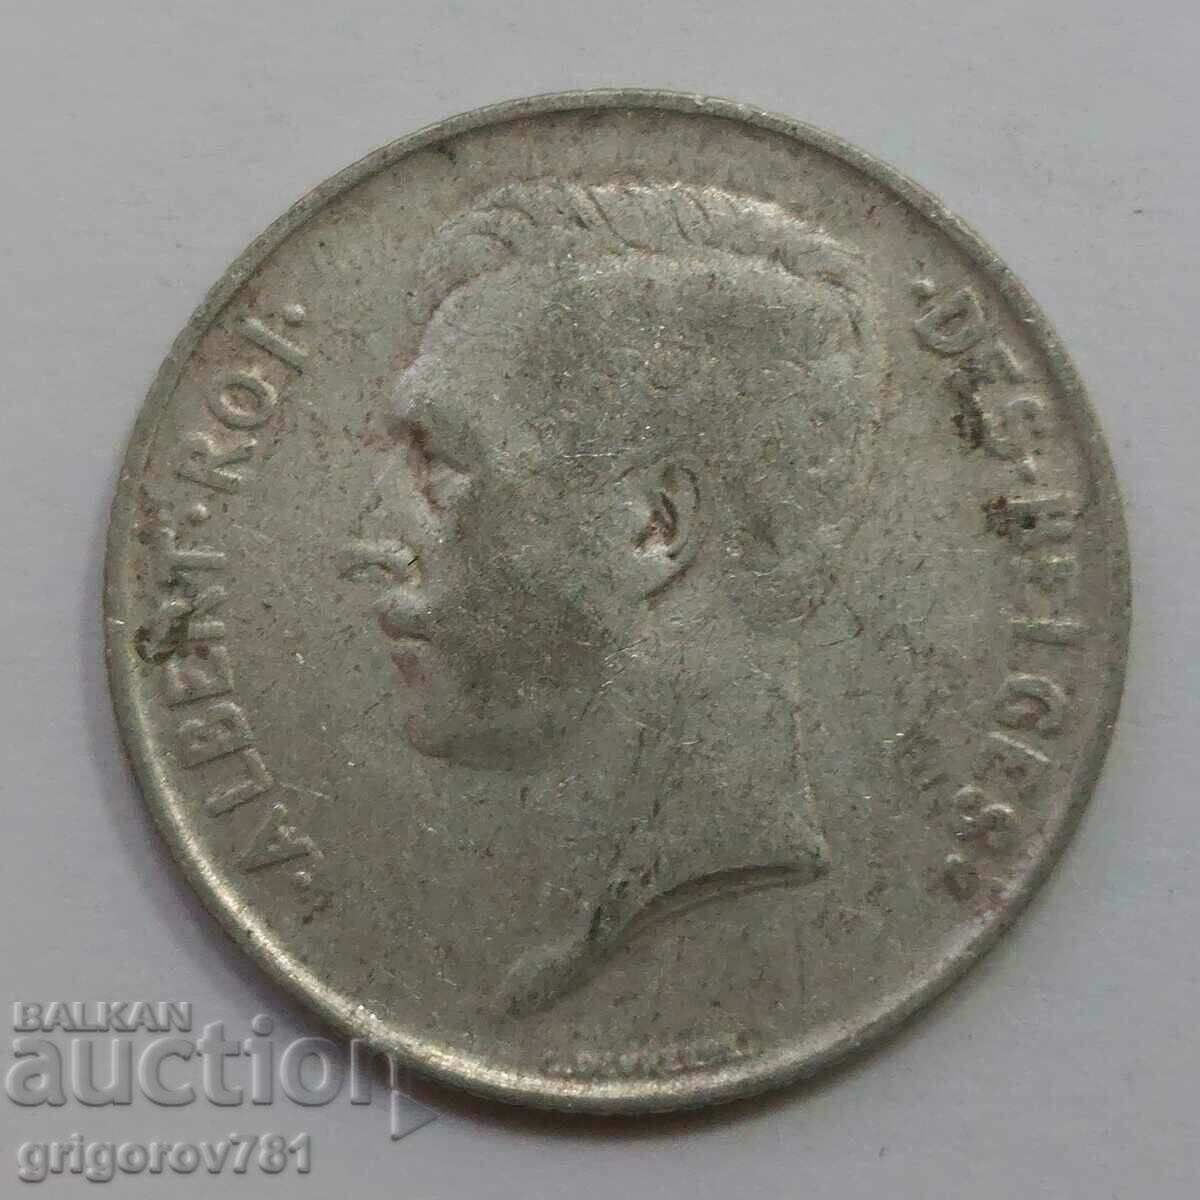 Ασήμι 1 φράγκου Βέλγιο 1911 - Ασημένιο νόμισμα #55